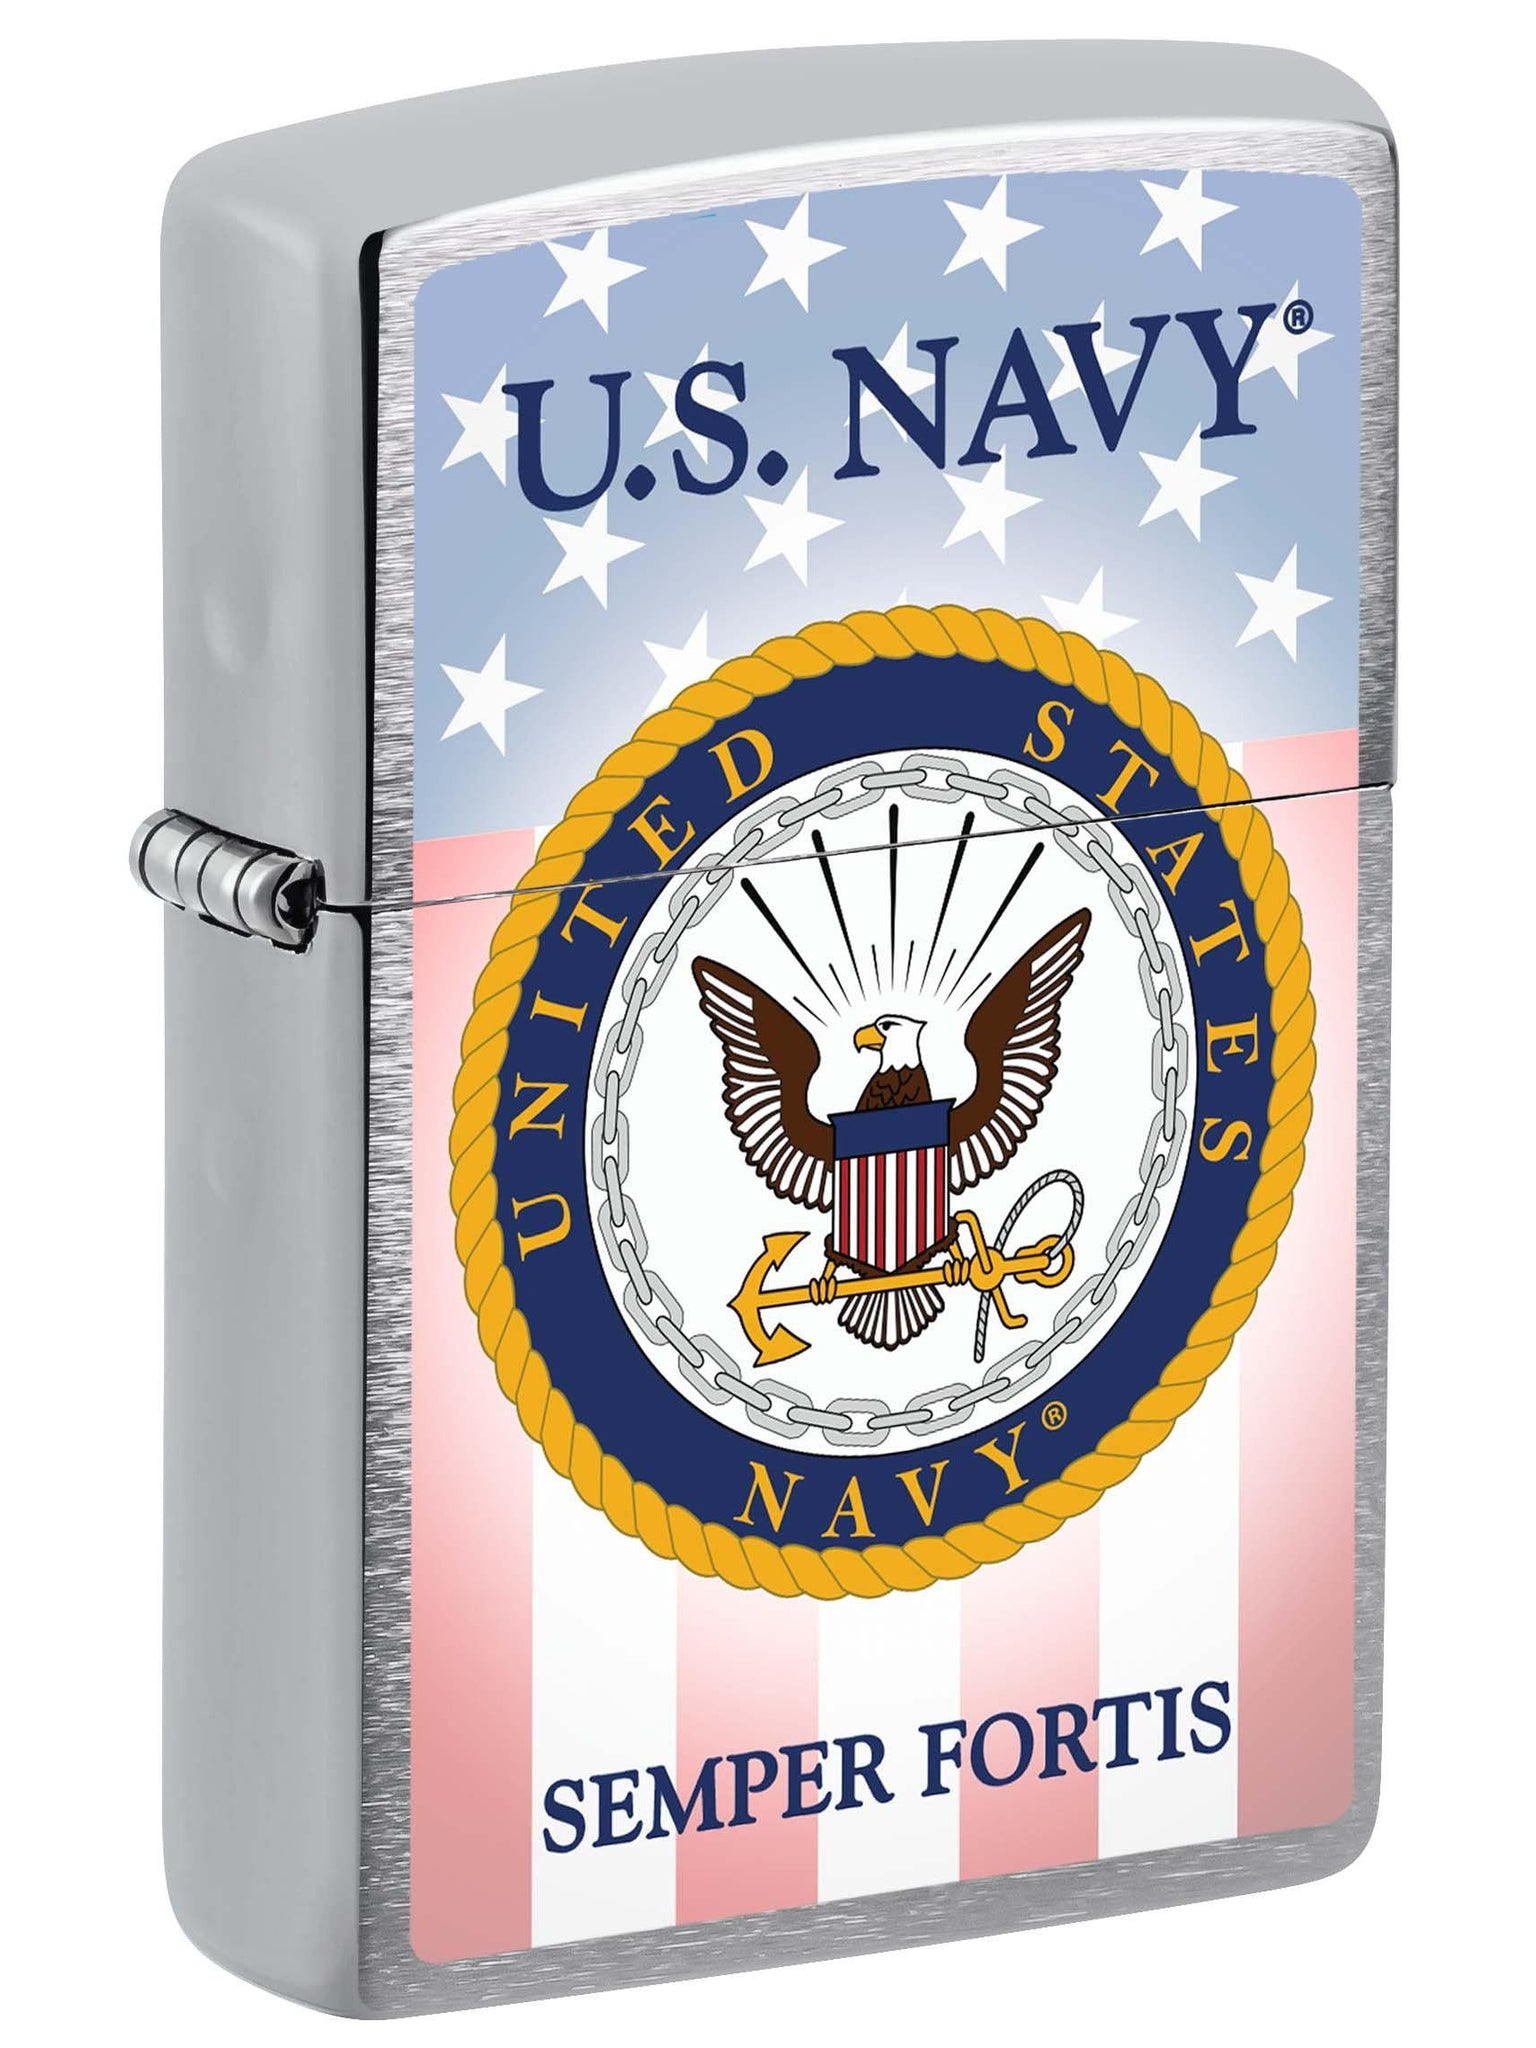 Zippo Lighter: U.S. Navy, Semper Fortis - Brushed Chrome 81020